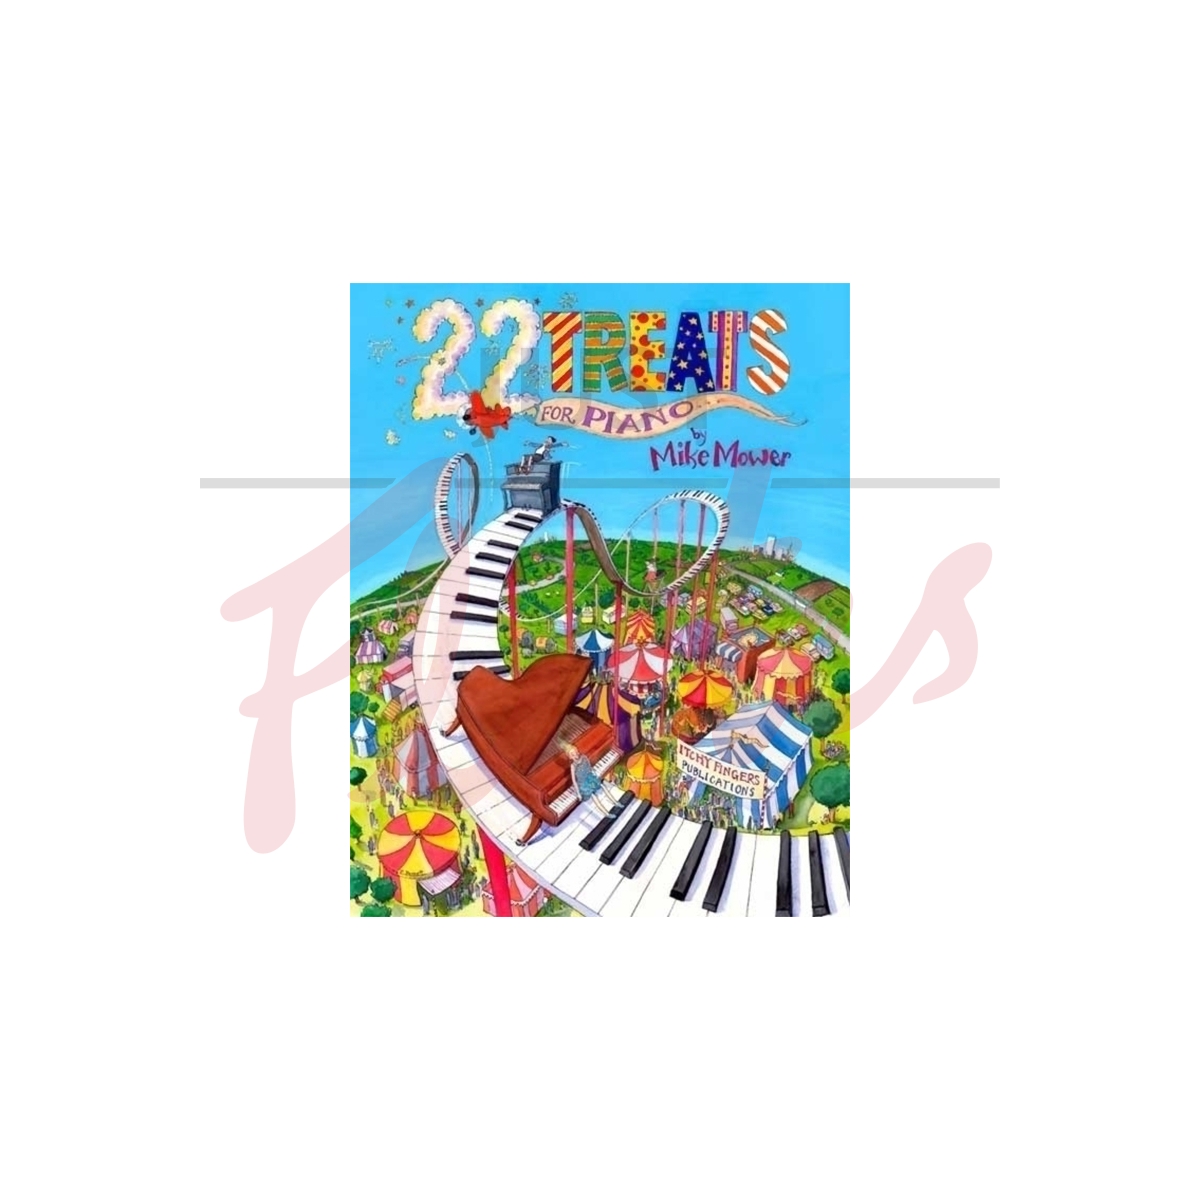 22 Treats for Piano